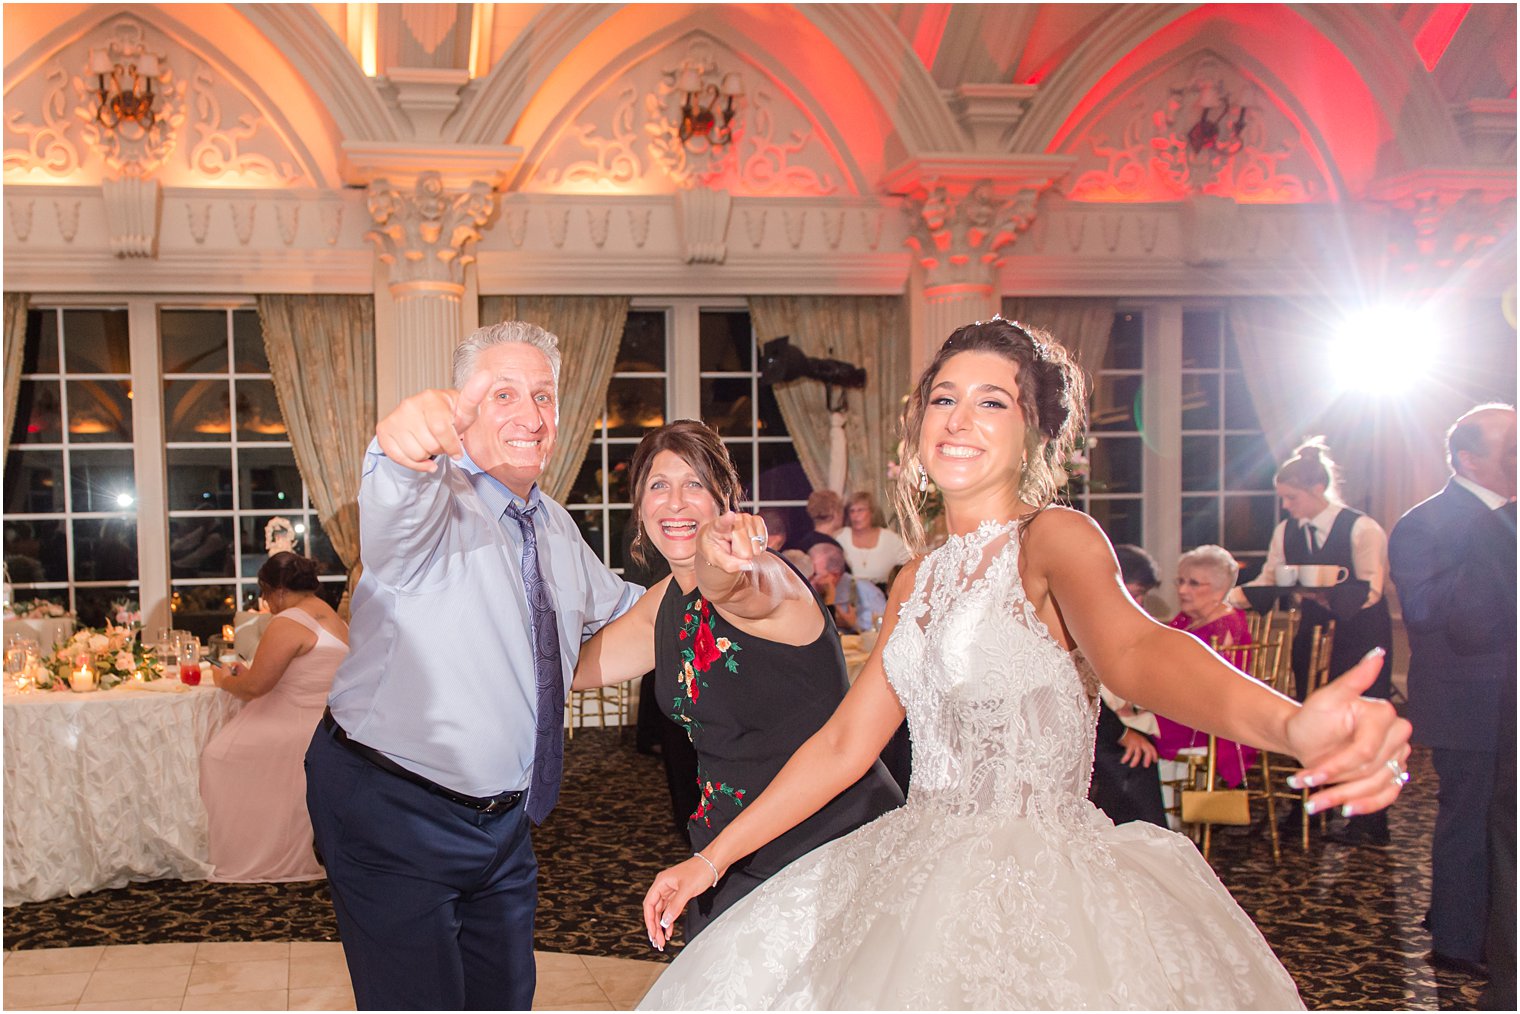 bride dances with parents during Allentown NJ wedding reception